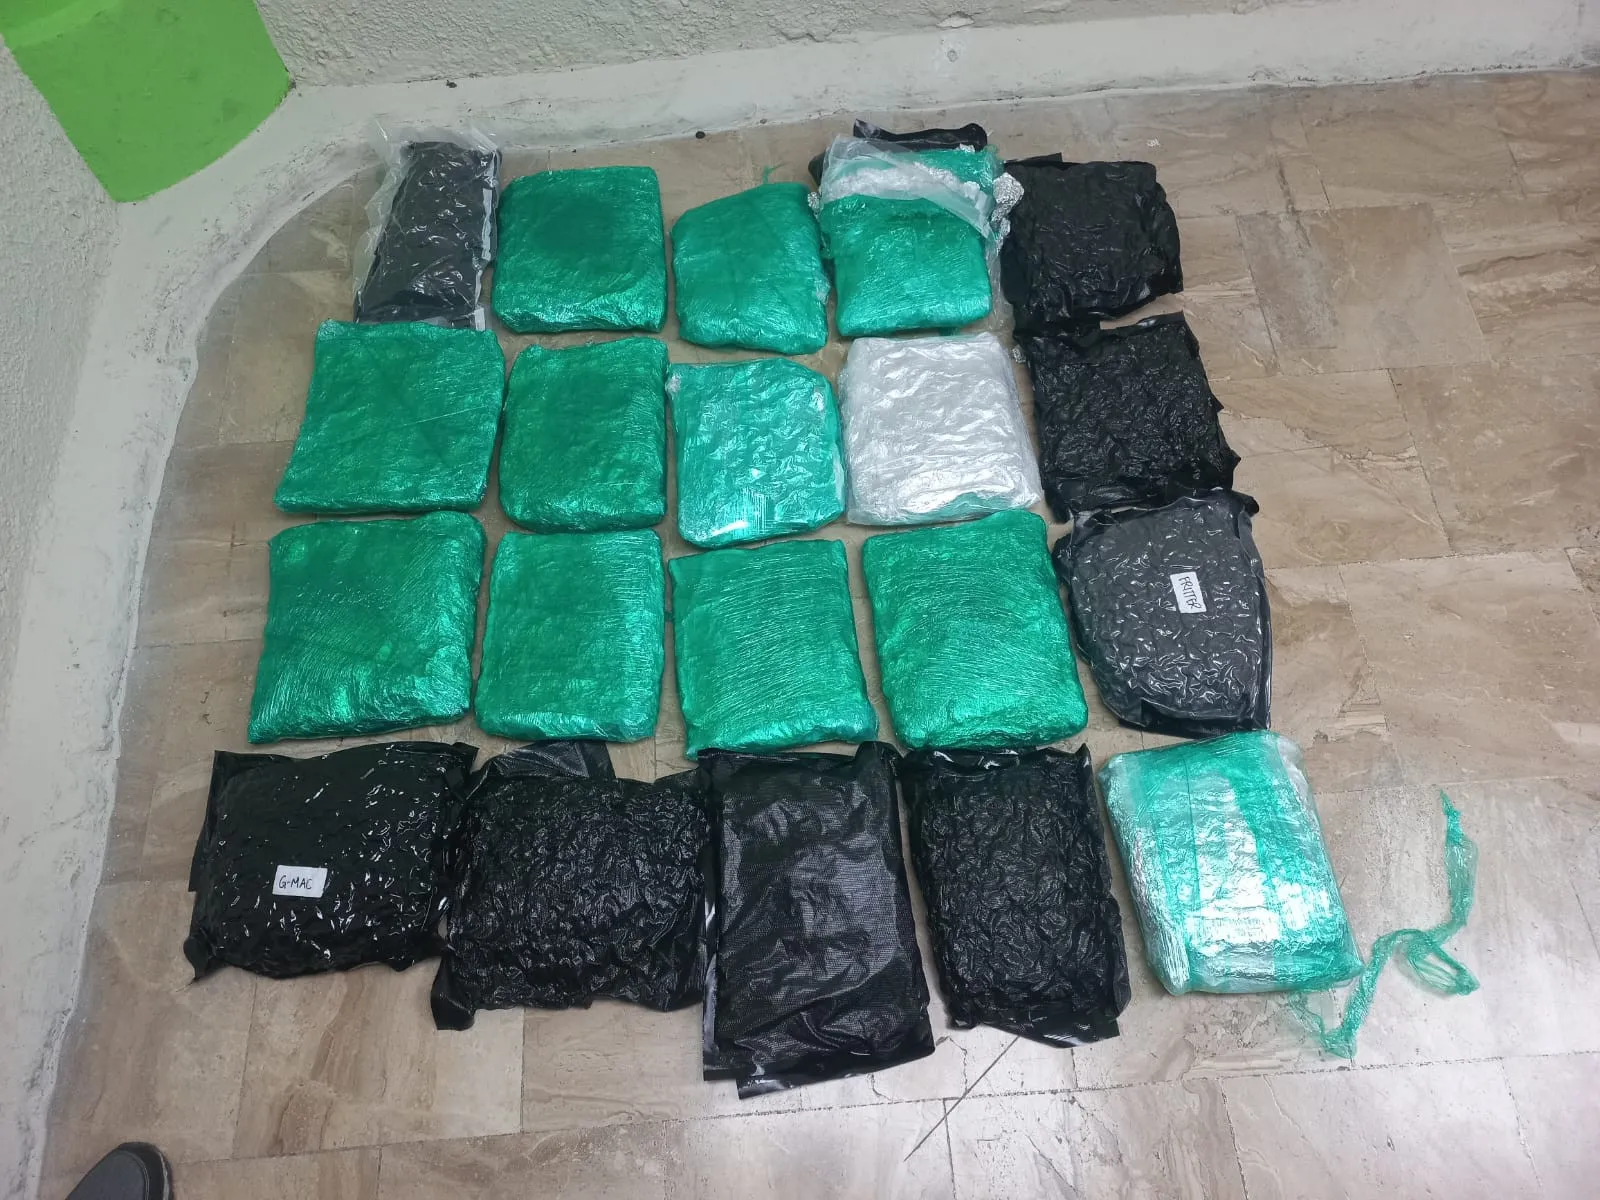 Antinarcóticos confisca 20 paquetes de marihuana en La Altagracia